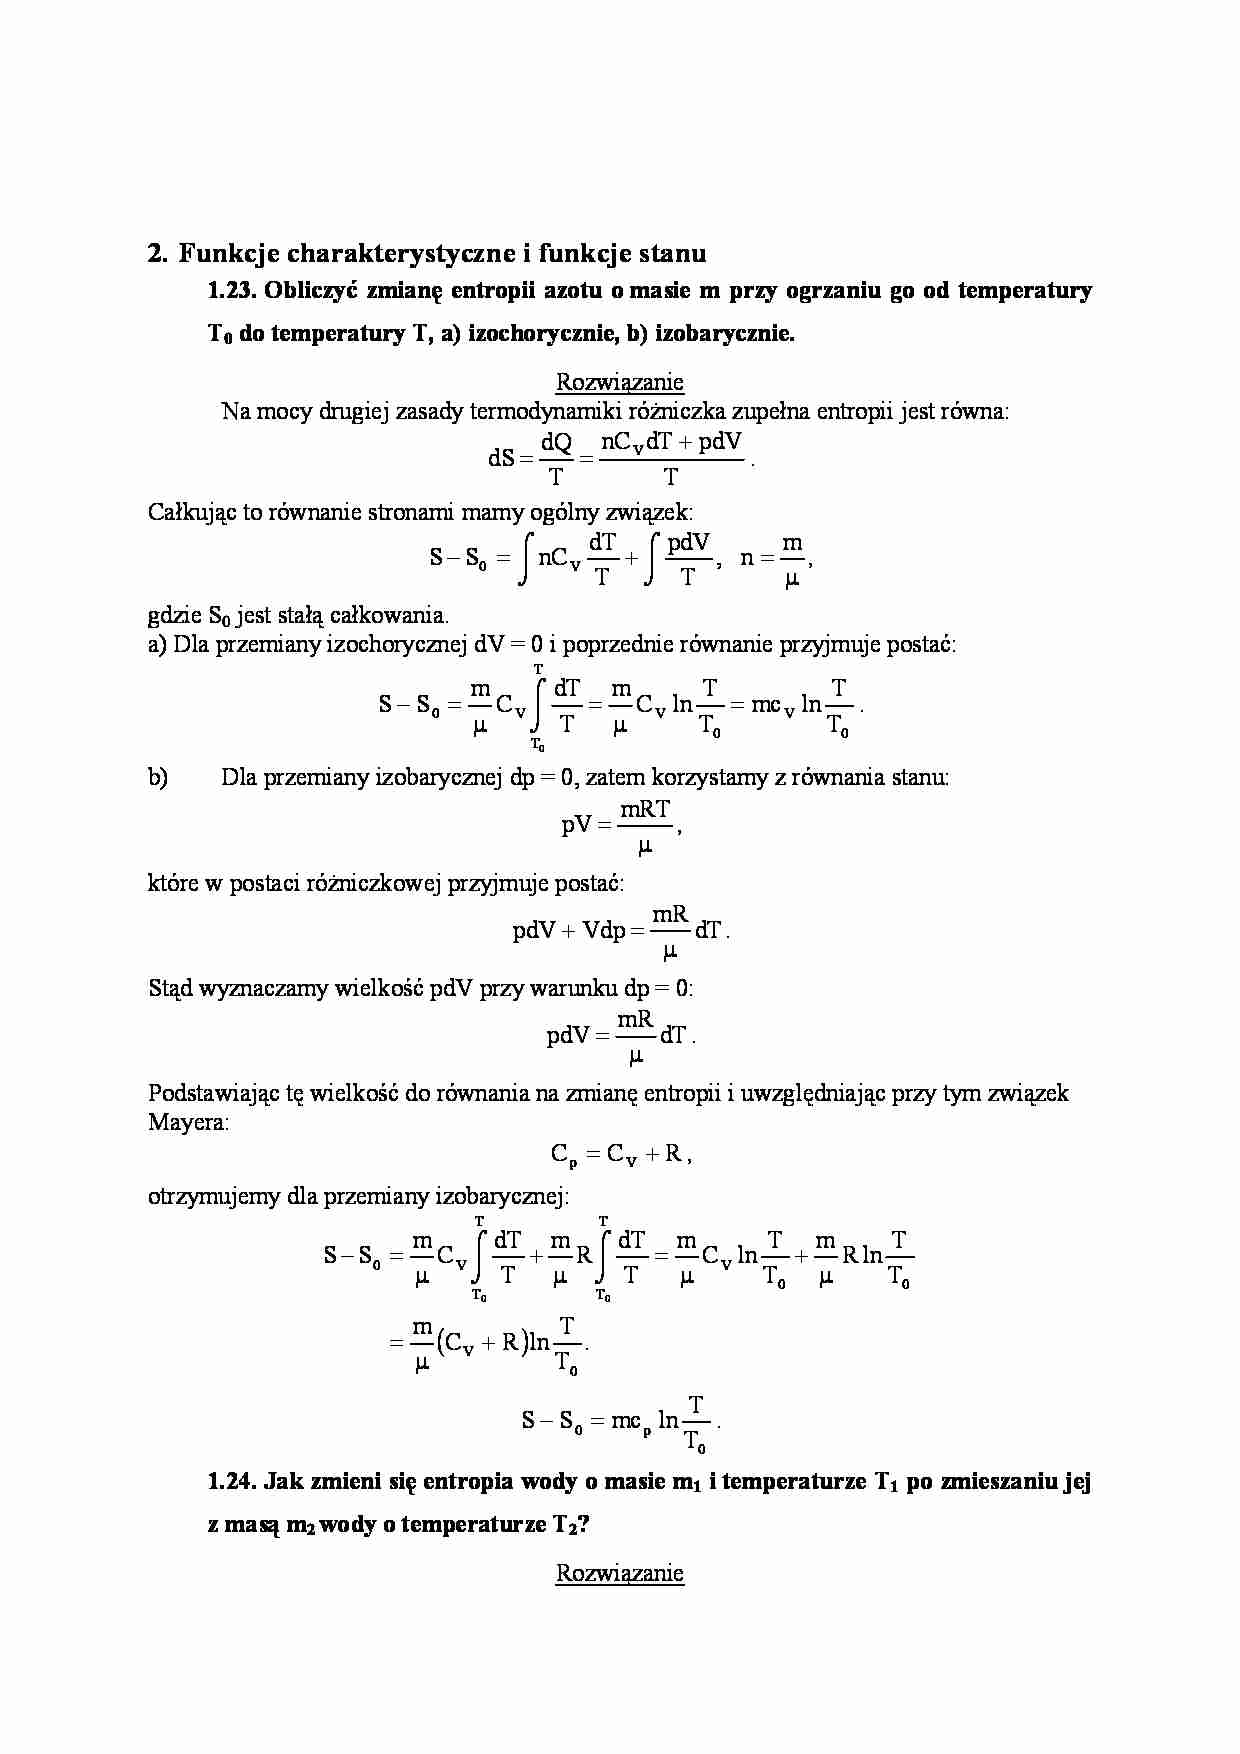 Funkcje charakterystyczne i funkcje stanu-zadania z rozwiązaniami - strona 1